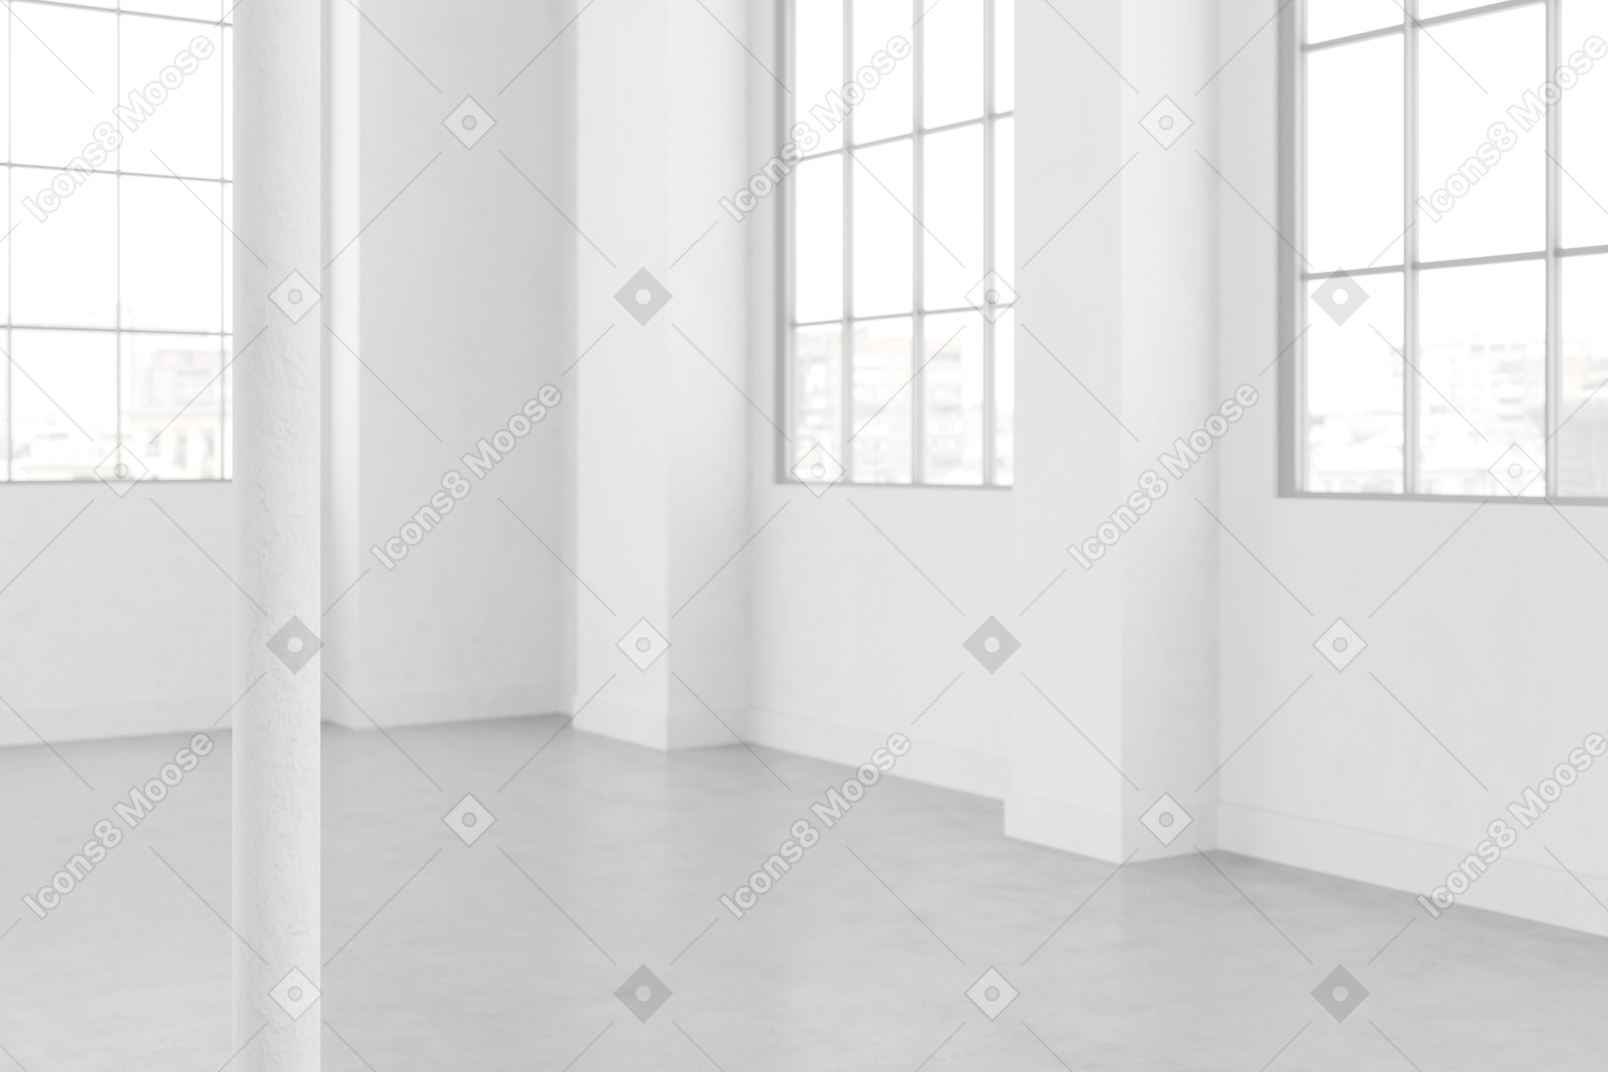 有大玻璃窗和白色墙壁的房间